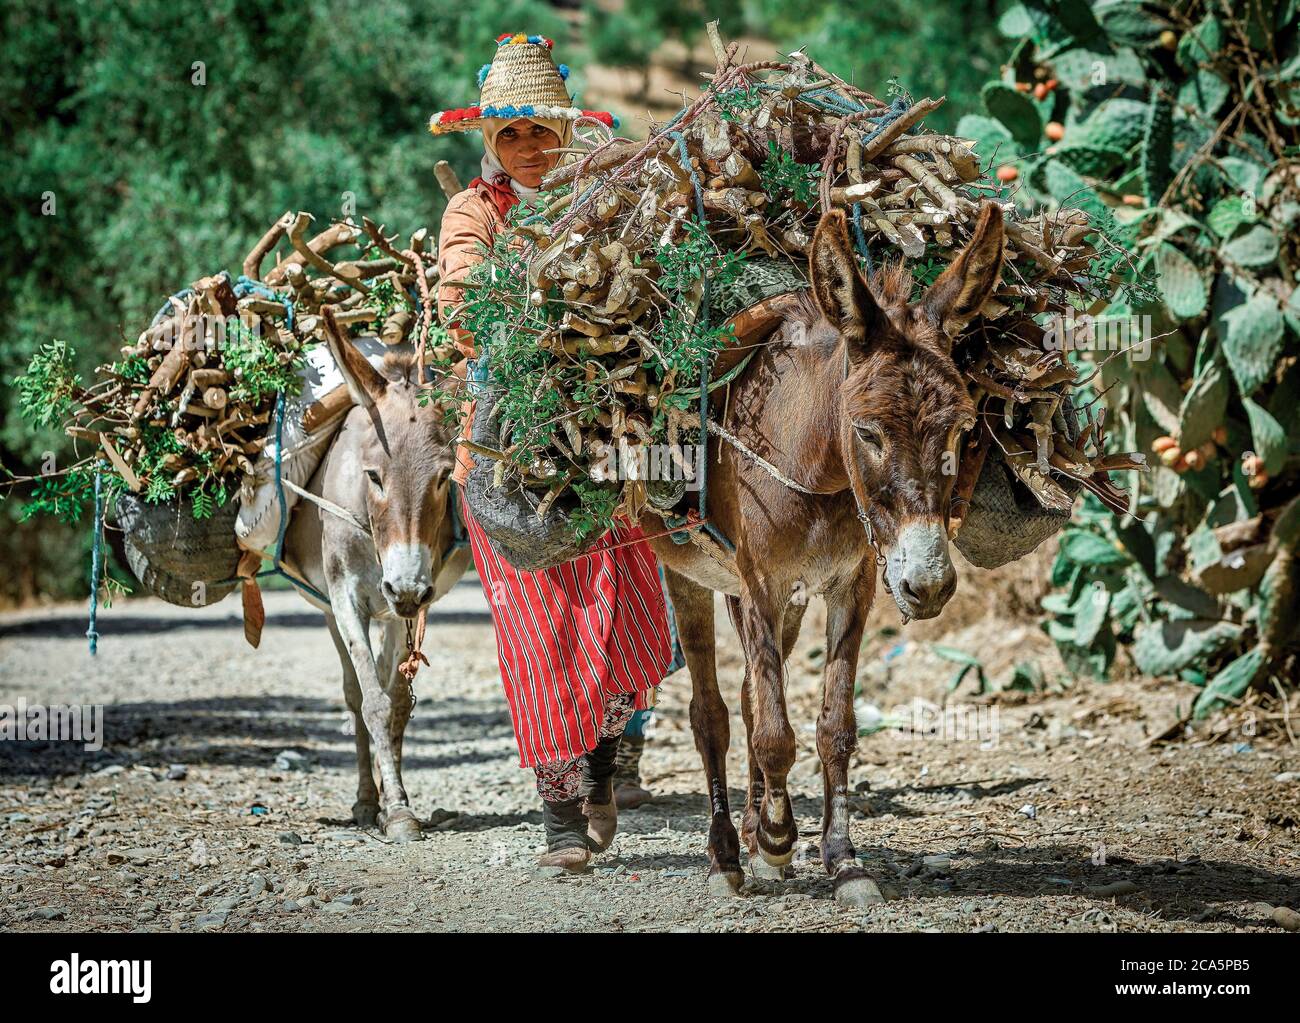 Maroc, Meknes, paysannes transportant du bois sur un âne au milieu de la nature sur un chemin Banque D'Images